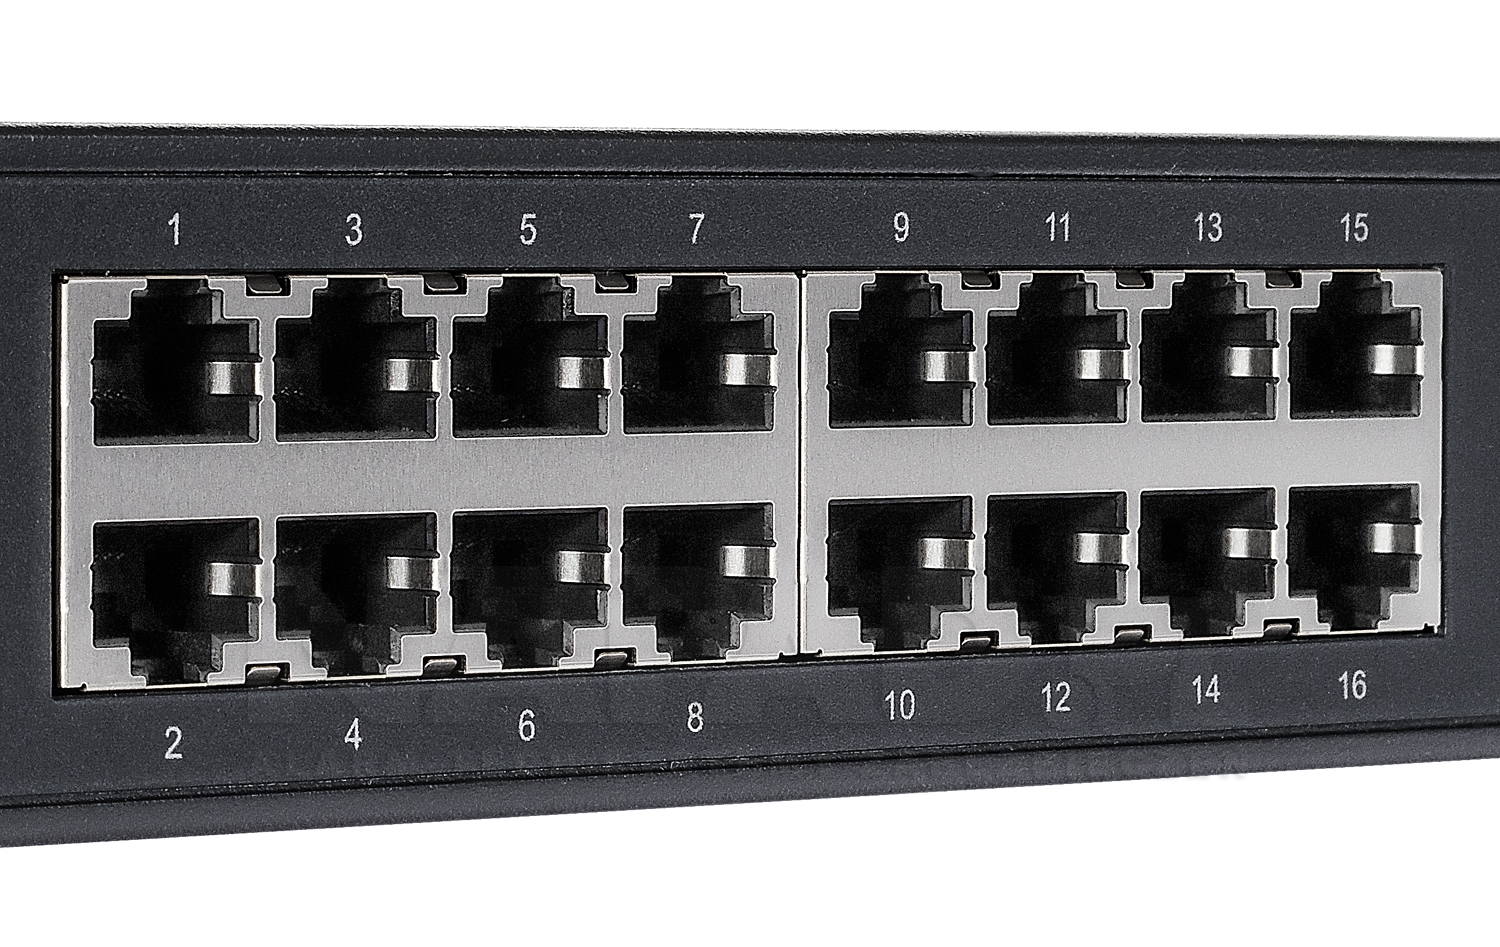 TL-SG1016 - Porty Ethernet w przełączniku.